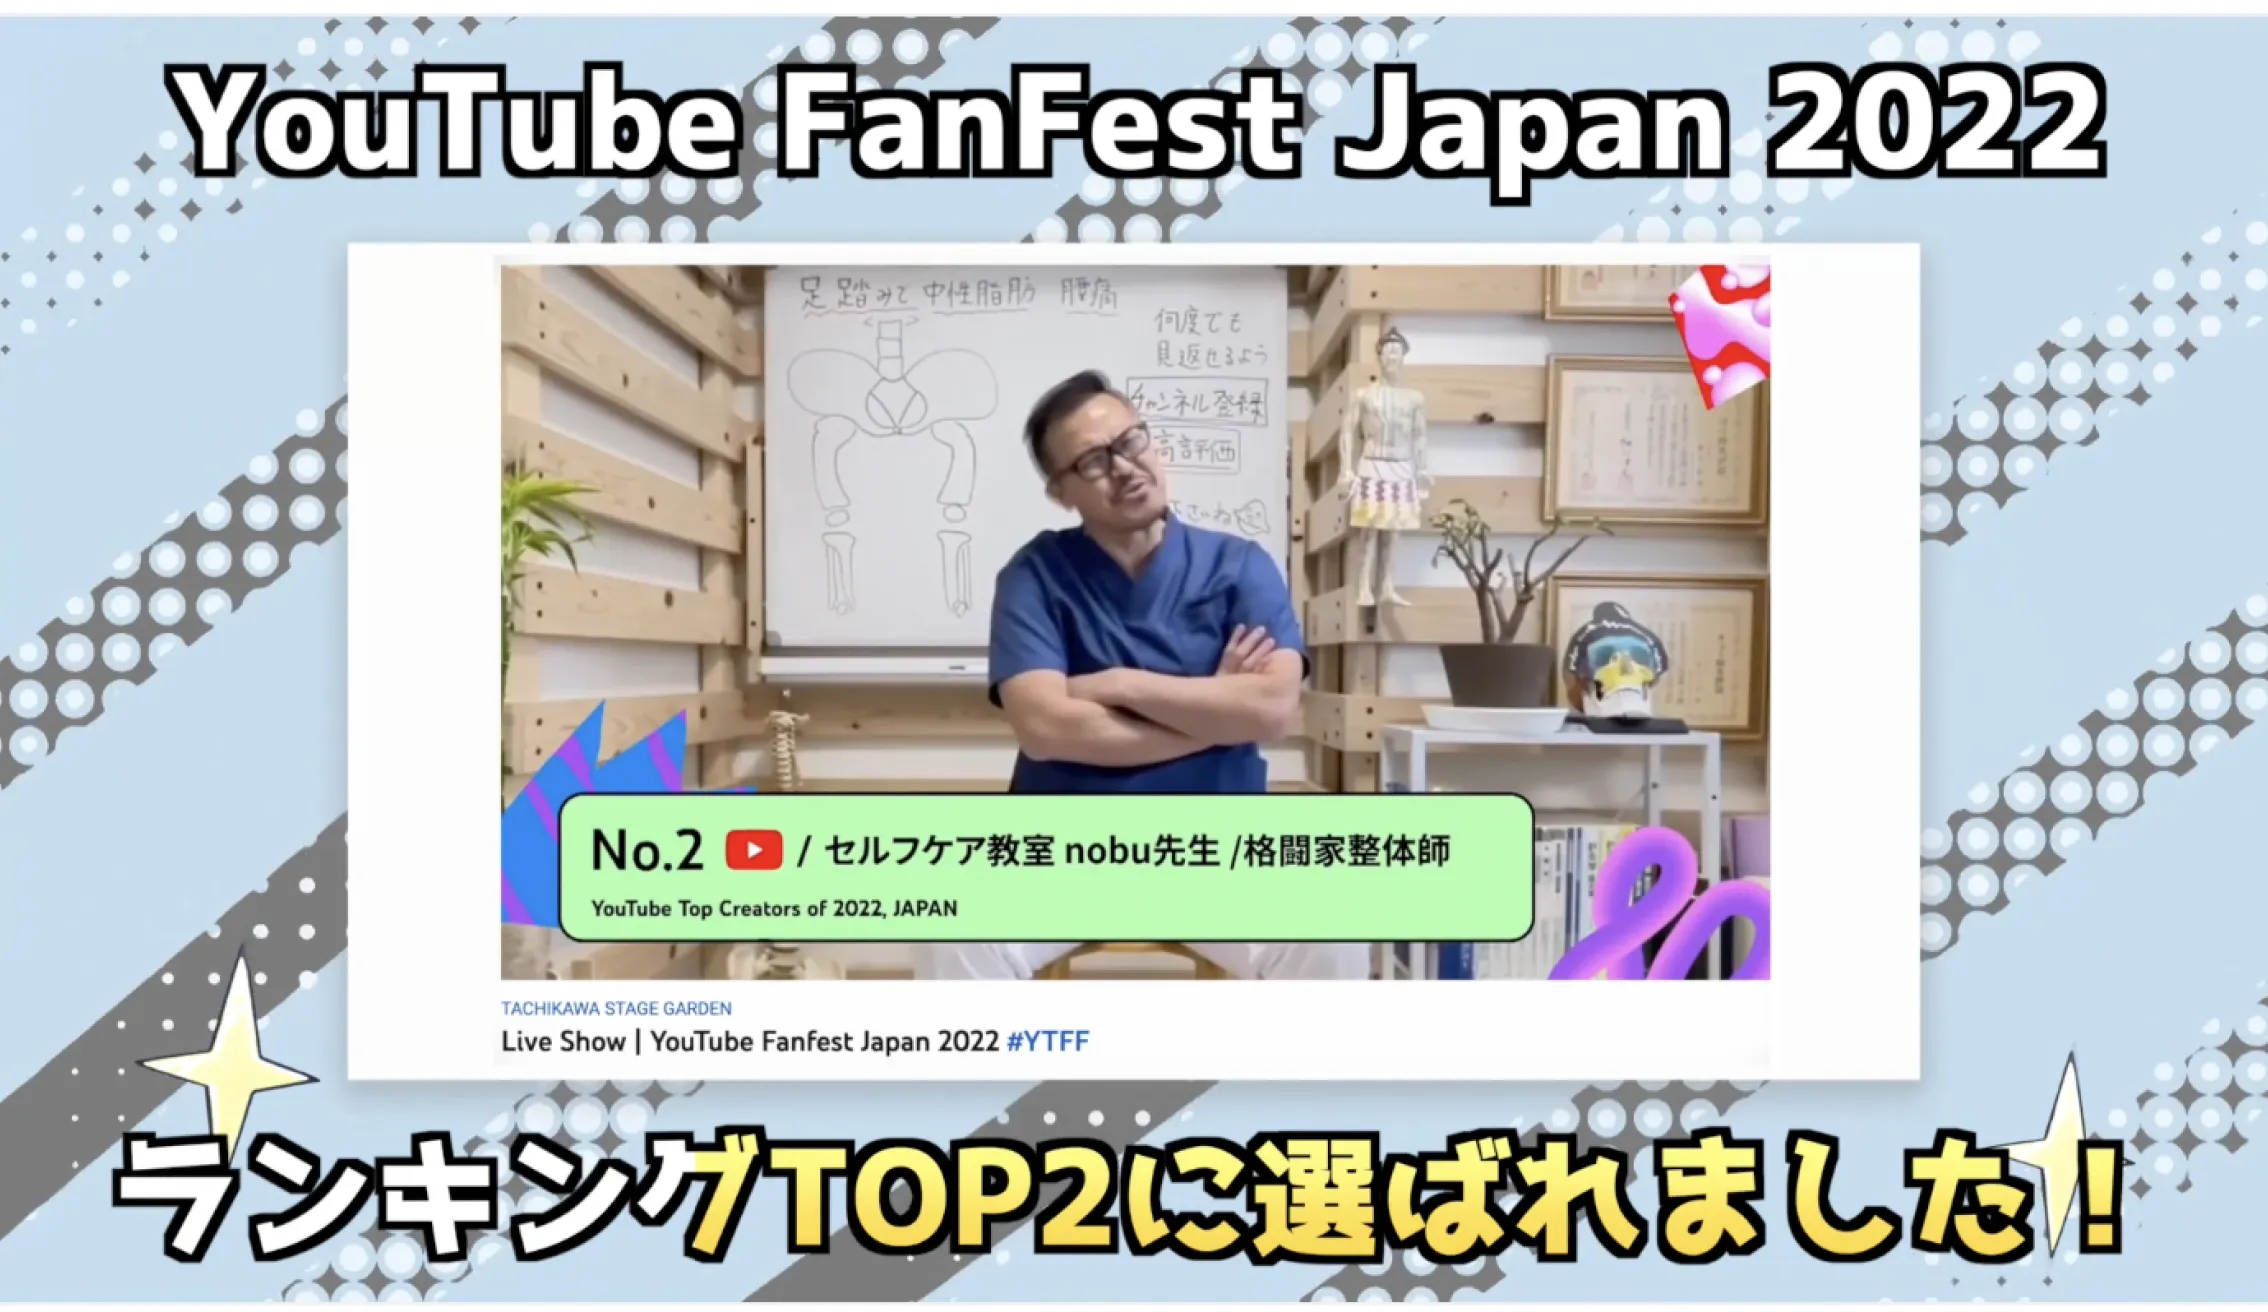 セルフケア整体 YouTubeFanFestJapan 2022で急上昇2位